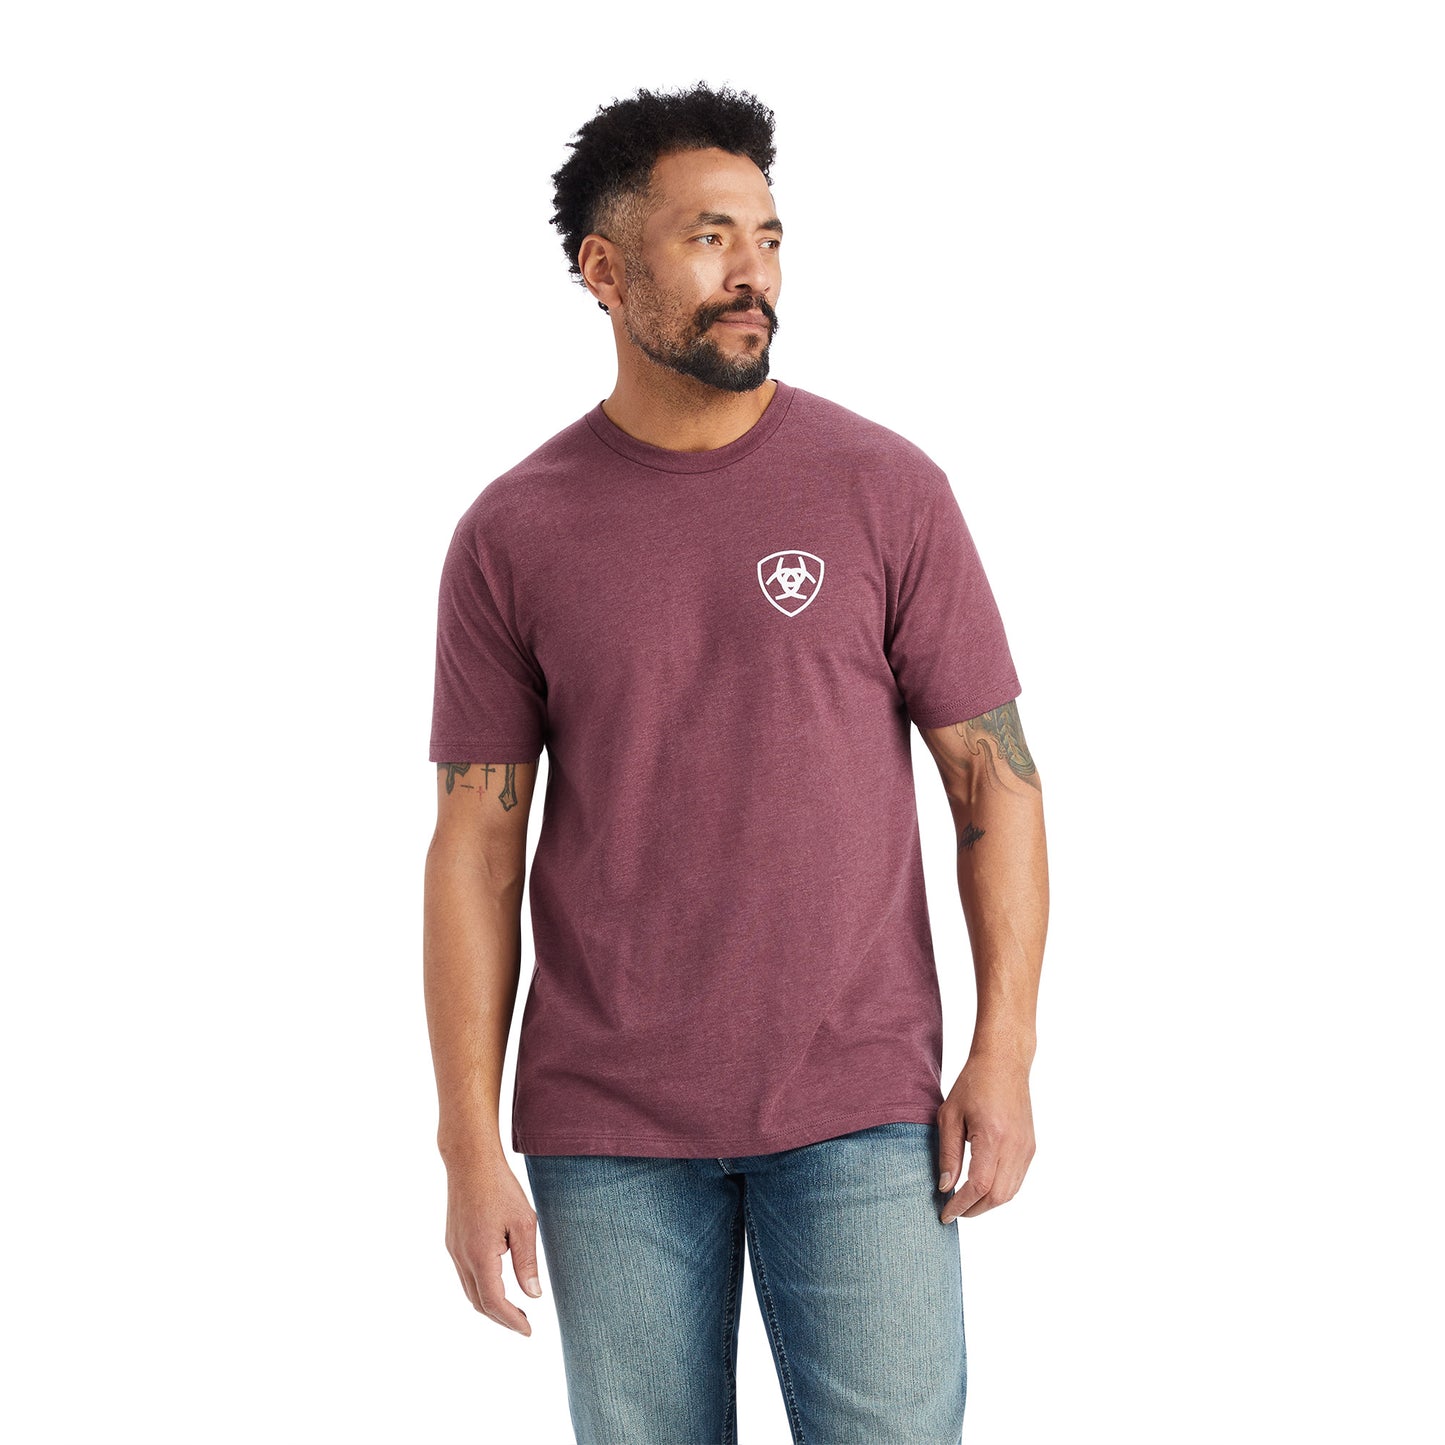 Ariat® Men's Burgundy Heather Minimalist Graphic T-Shirt 10042641